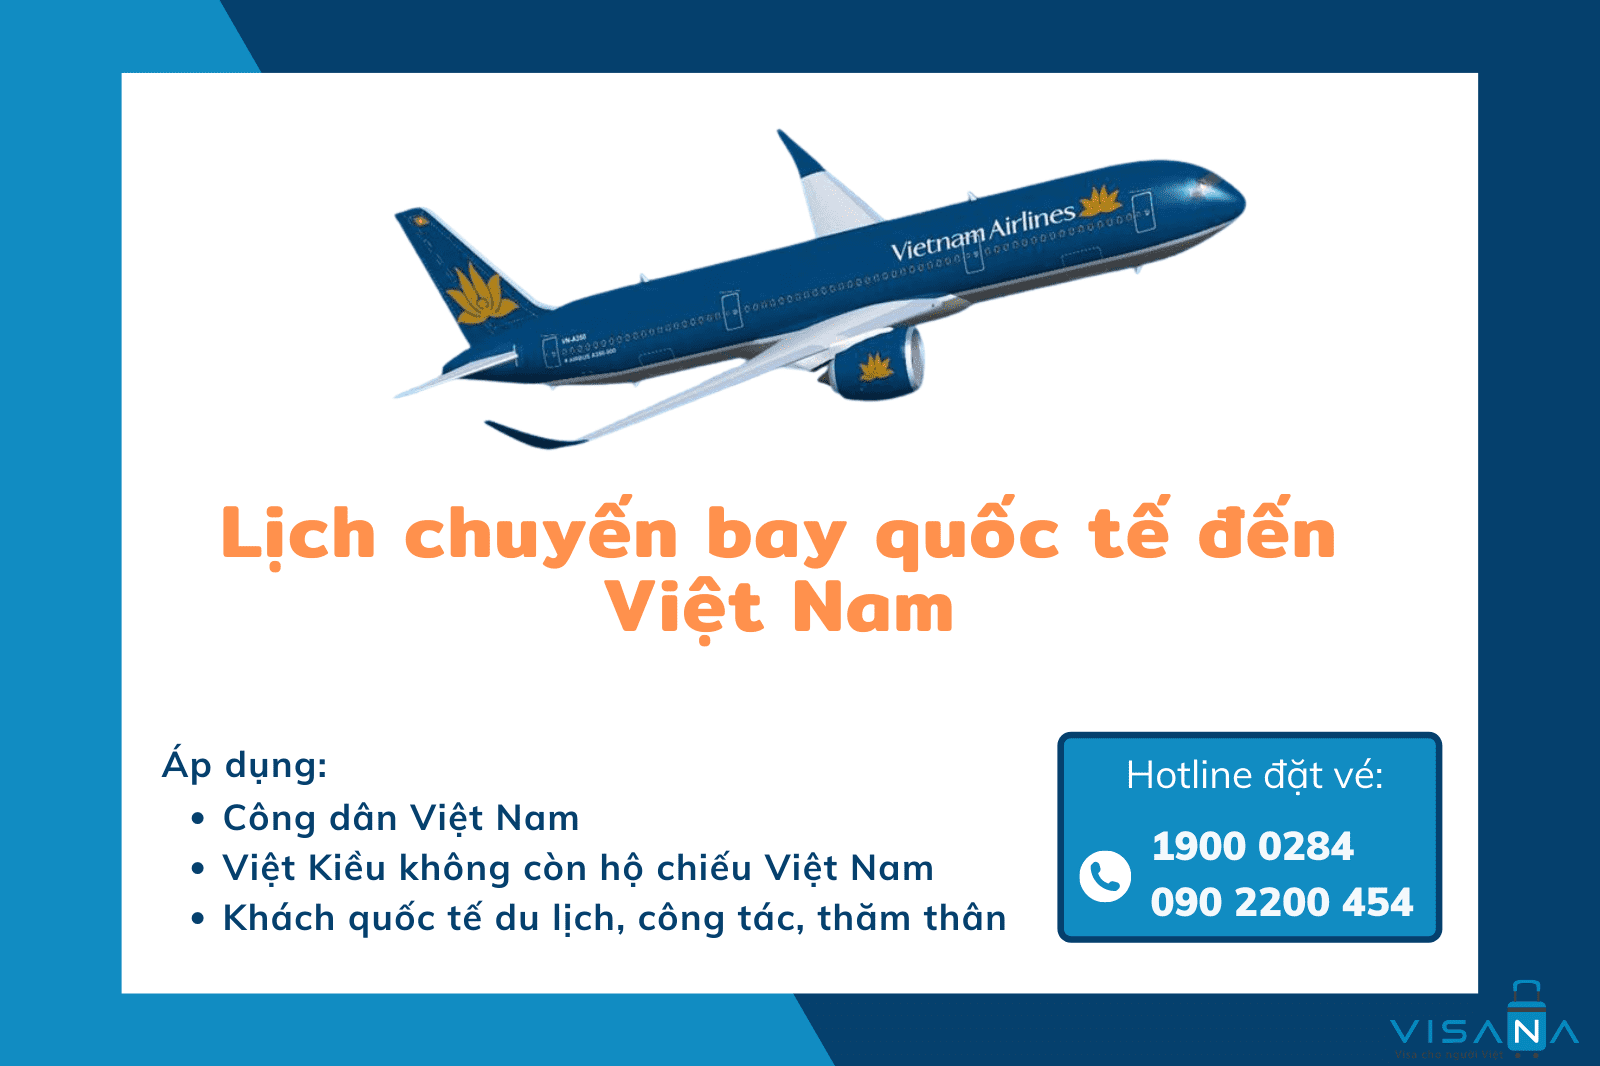 Lịch chuyến bay quốc tế đến Việt Nam